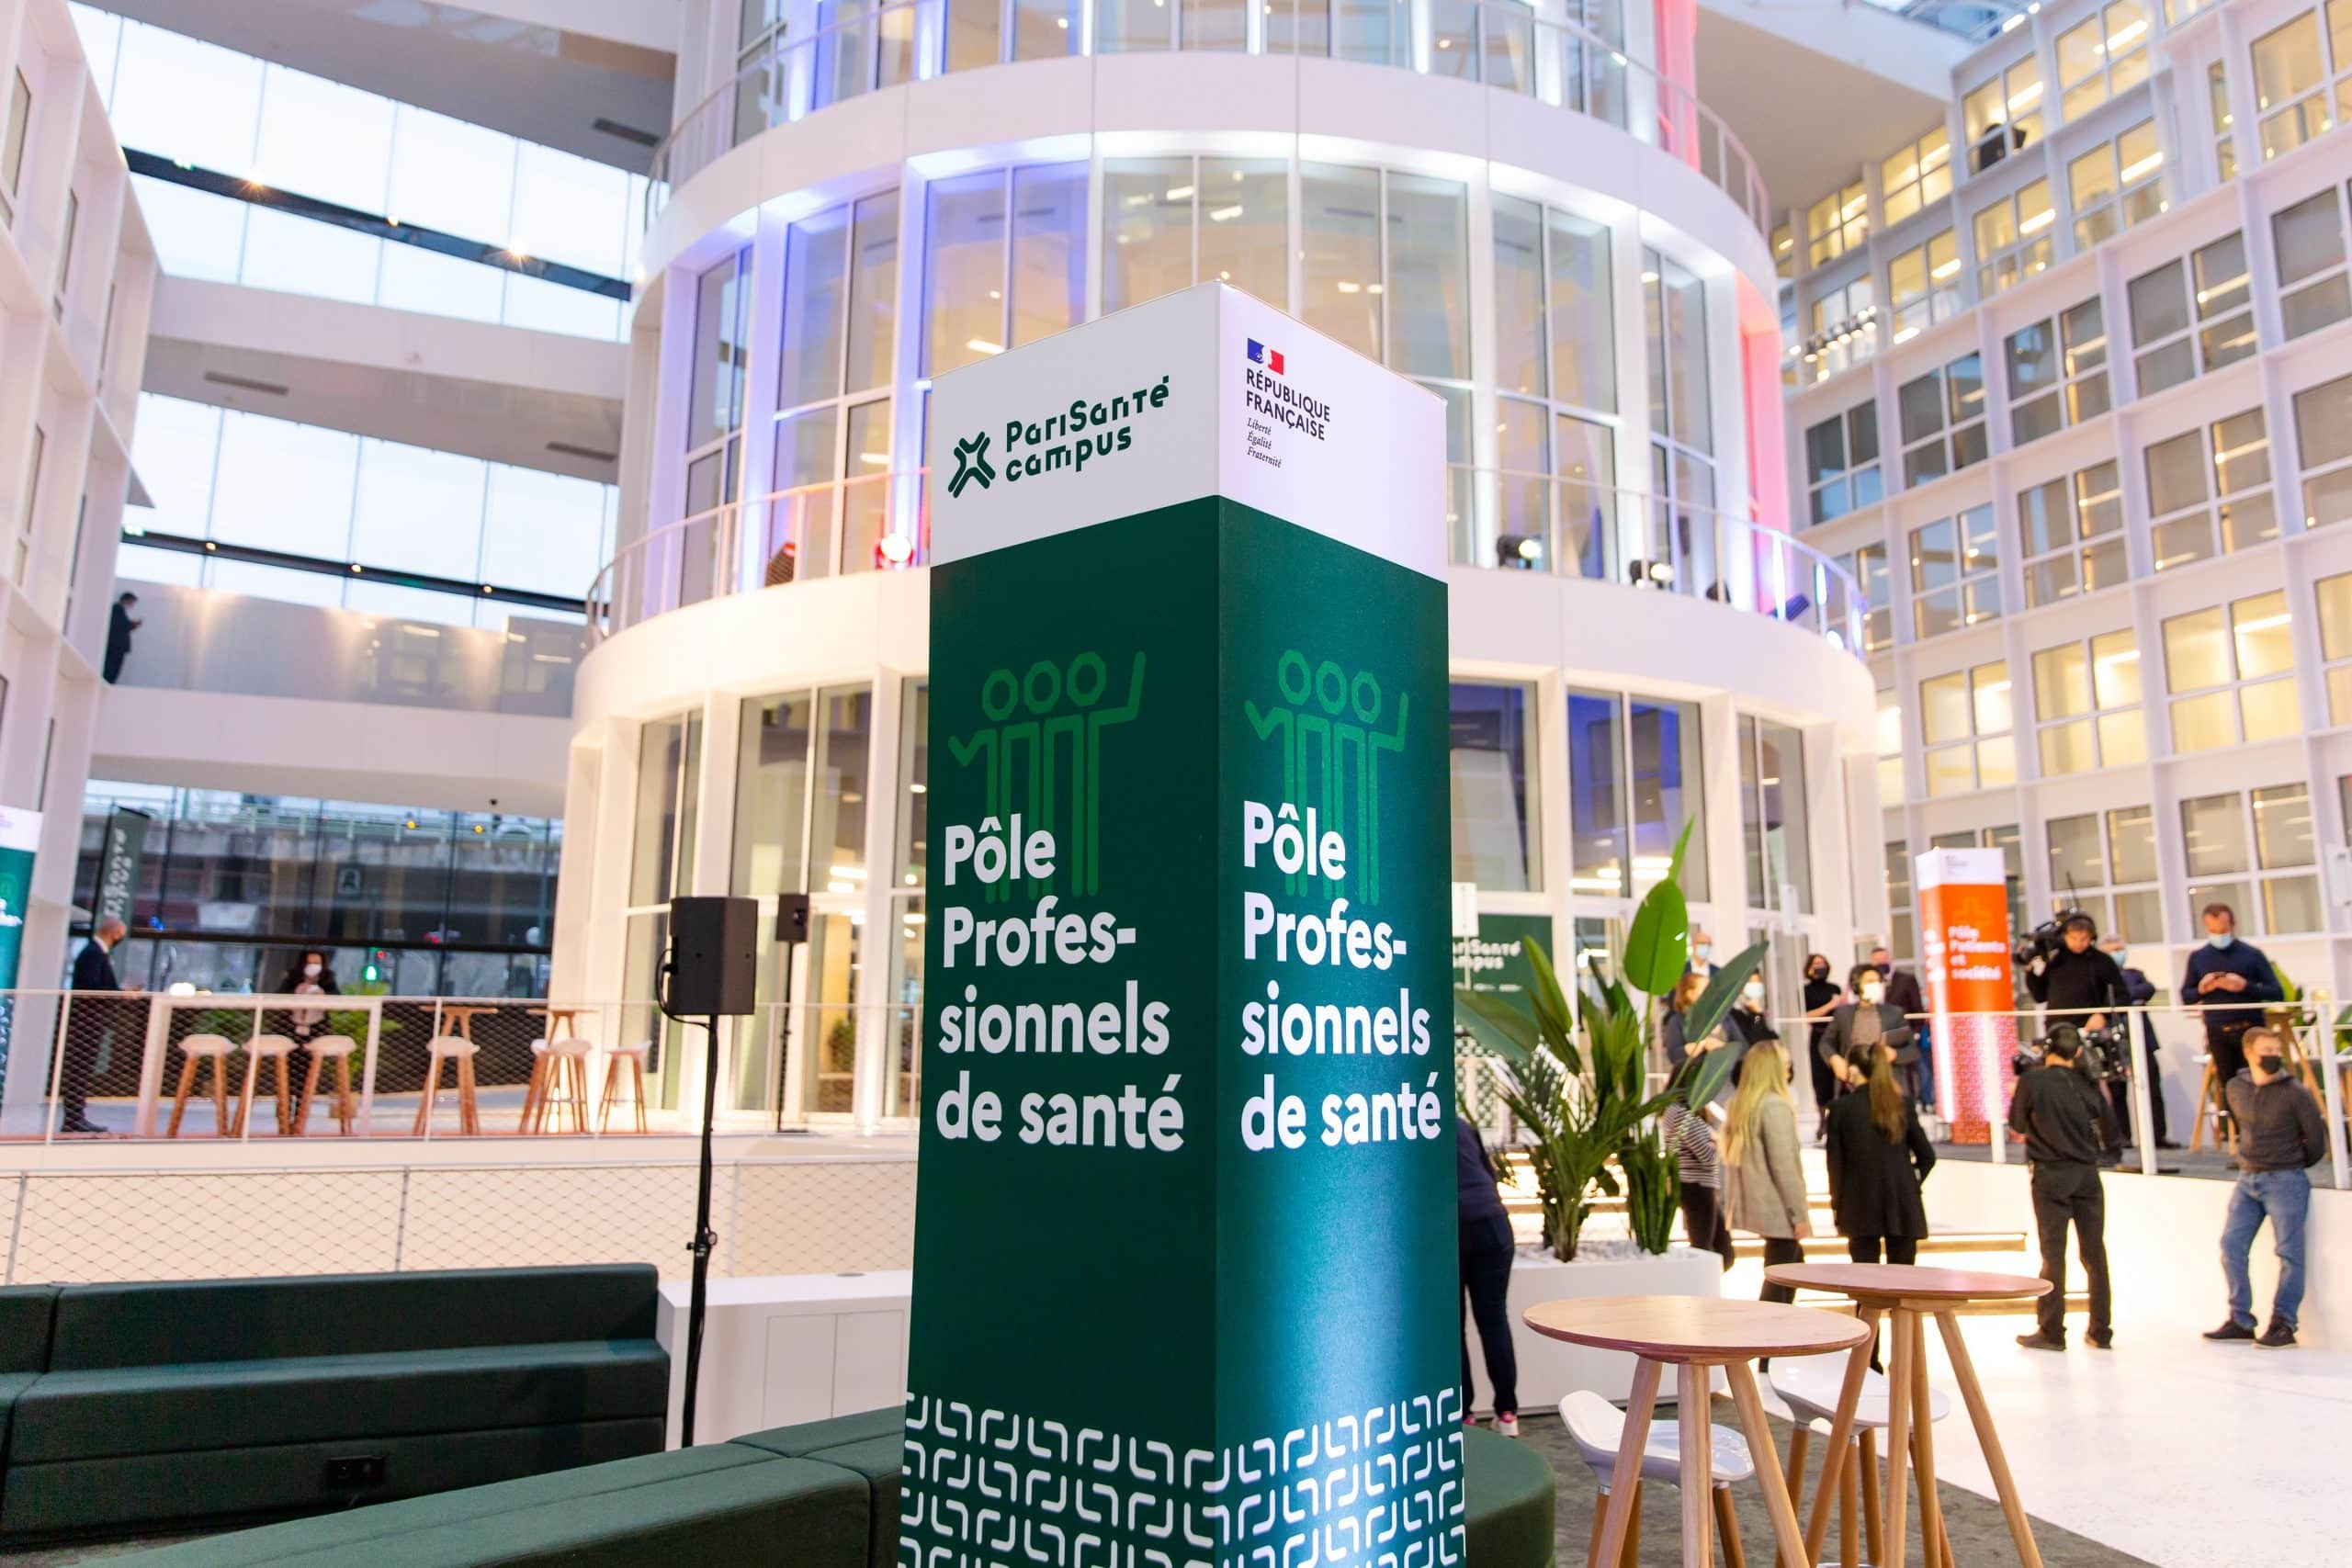 60 startups hosted at PariSanté Campus